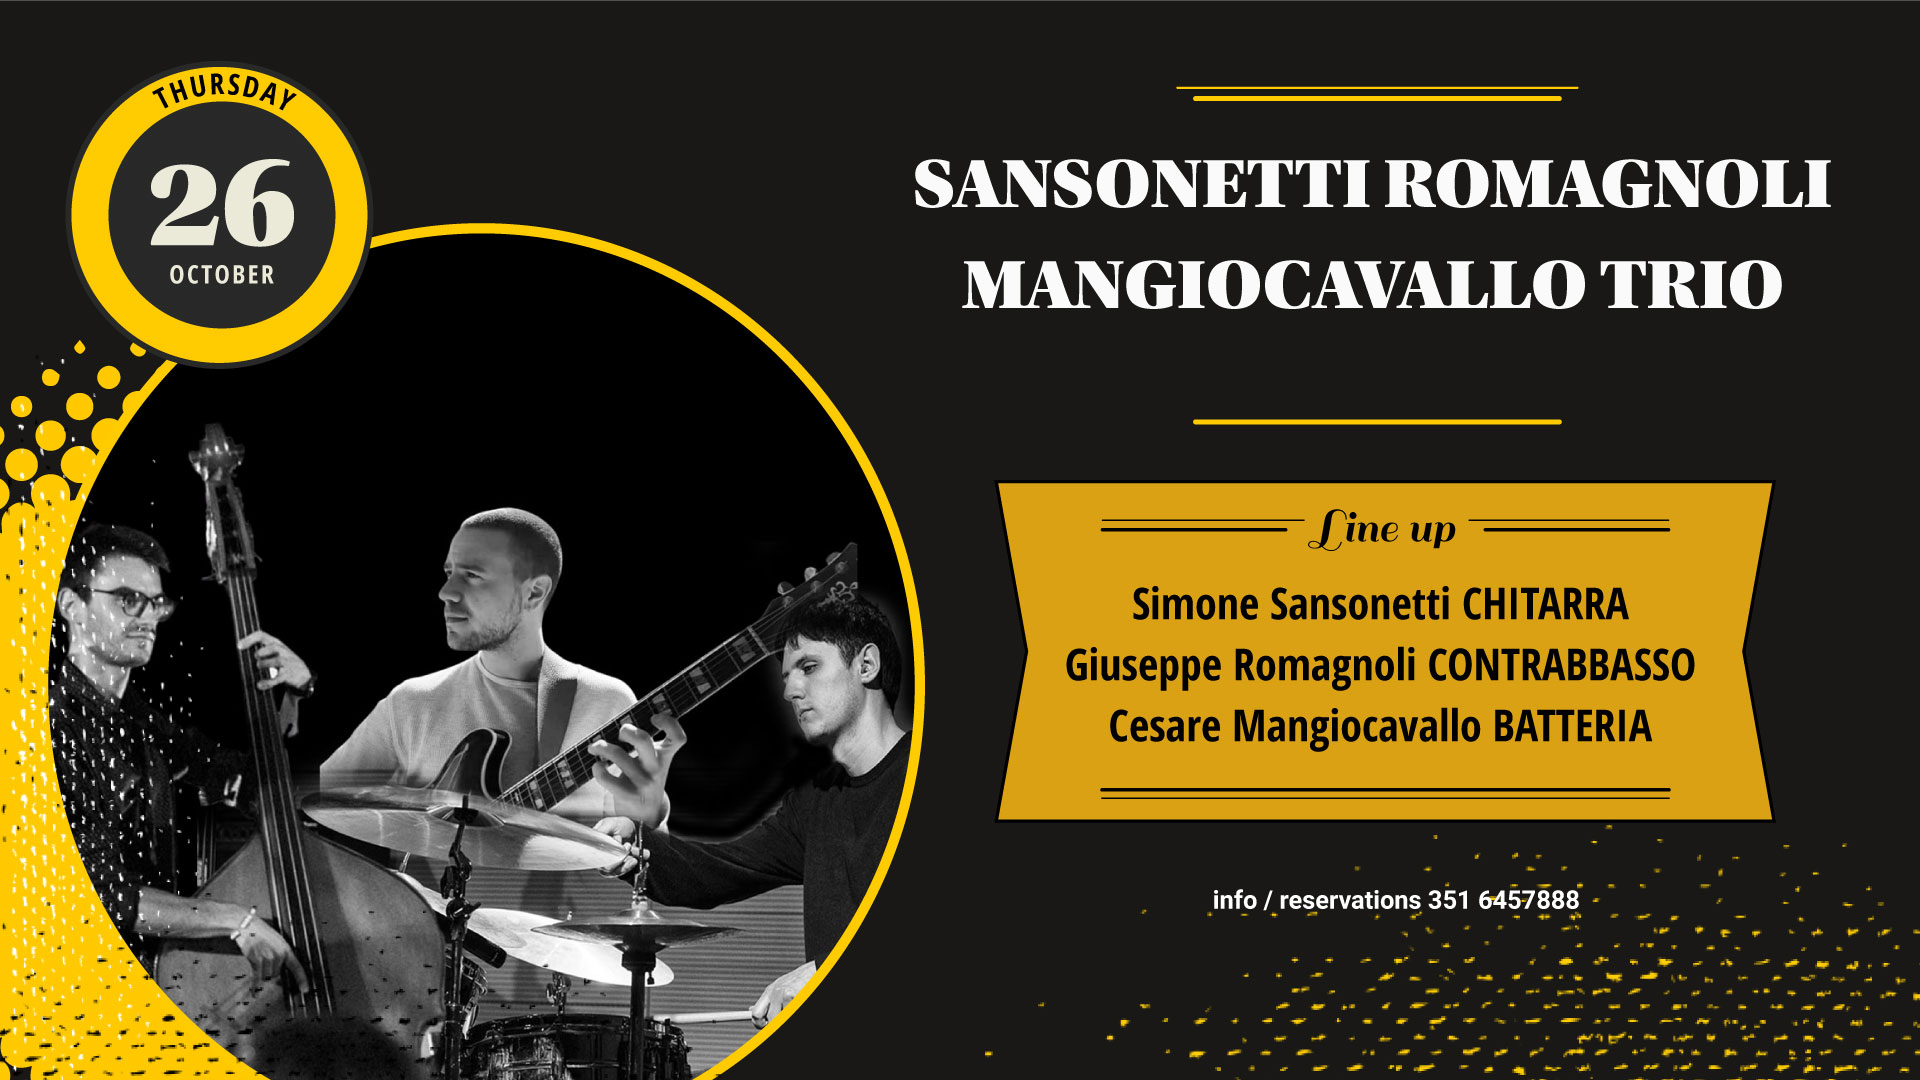 Sansonetti Romagnoli Mangiocavallo Trio